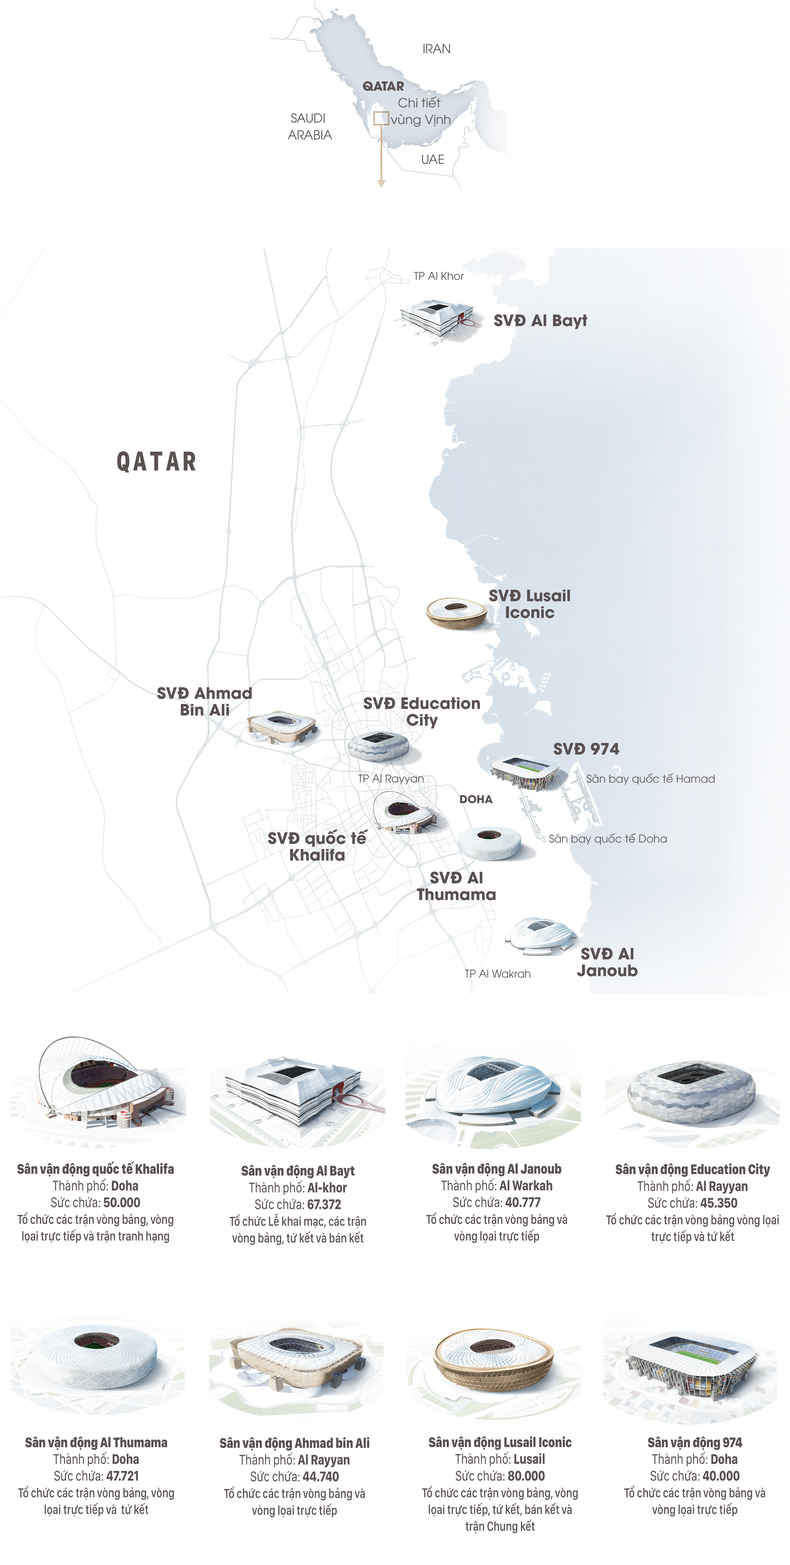 [Infographic] Địa điểm 8 sân vận động World Cup Qatar 2022 ảnh 1